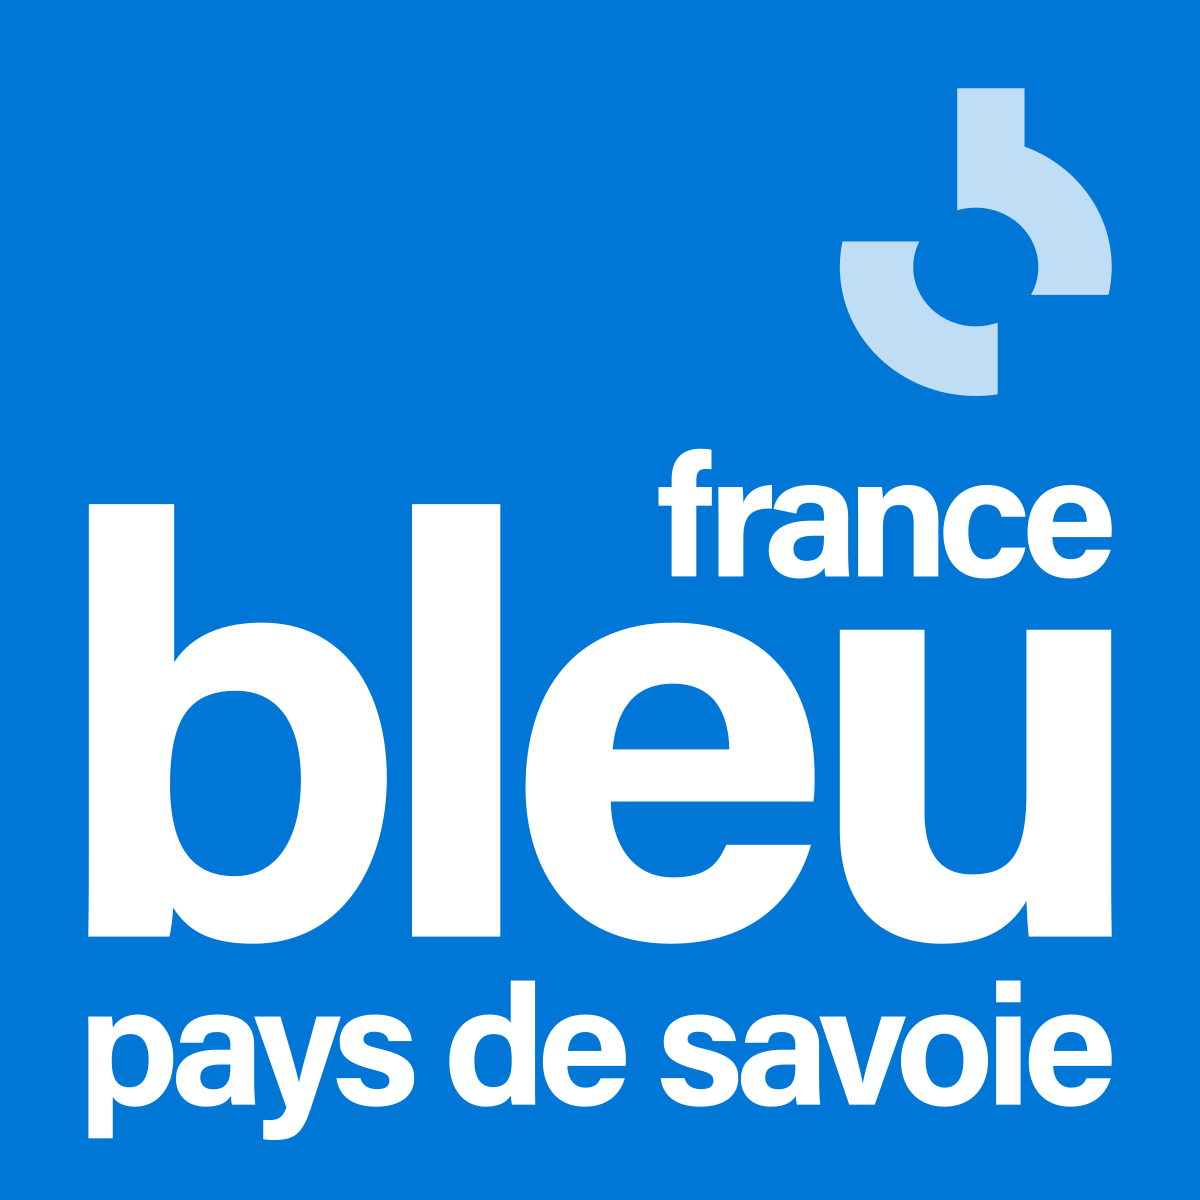 France bleu pays de savoie 2021 svg